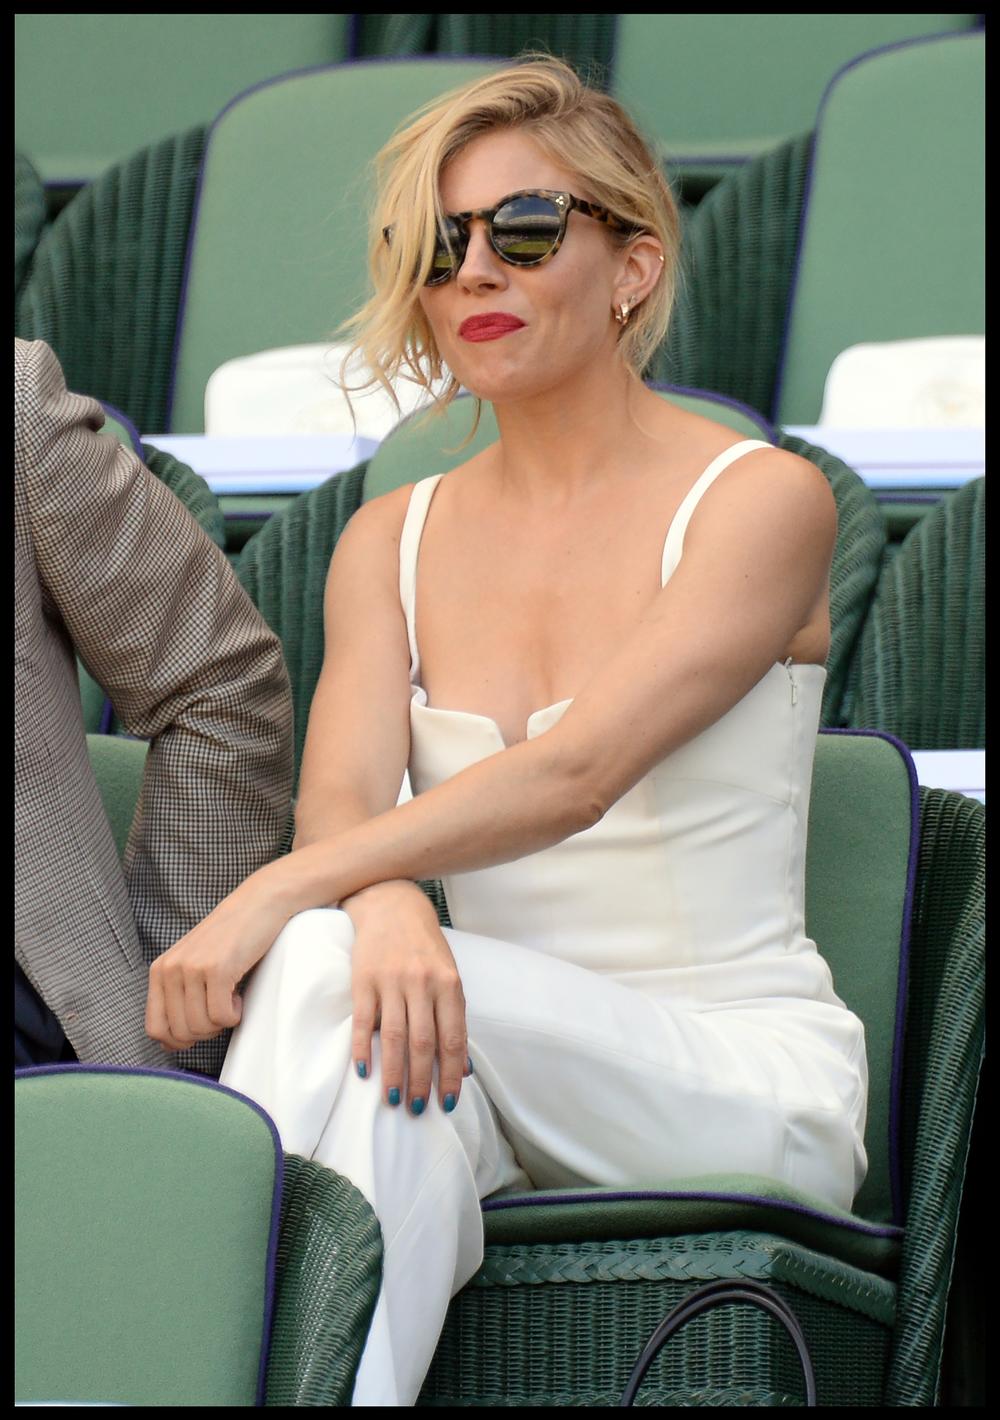 <b> Sijena Miler </b>

Šarmantna glumica uživala je 2015. godine u meču između Novaka Đokovića i Rišara Gaskea u prelepom kombinezonu bele boje.